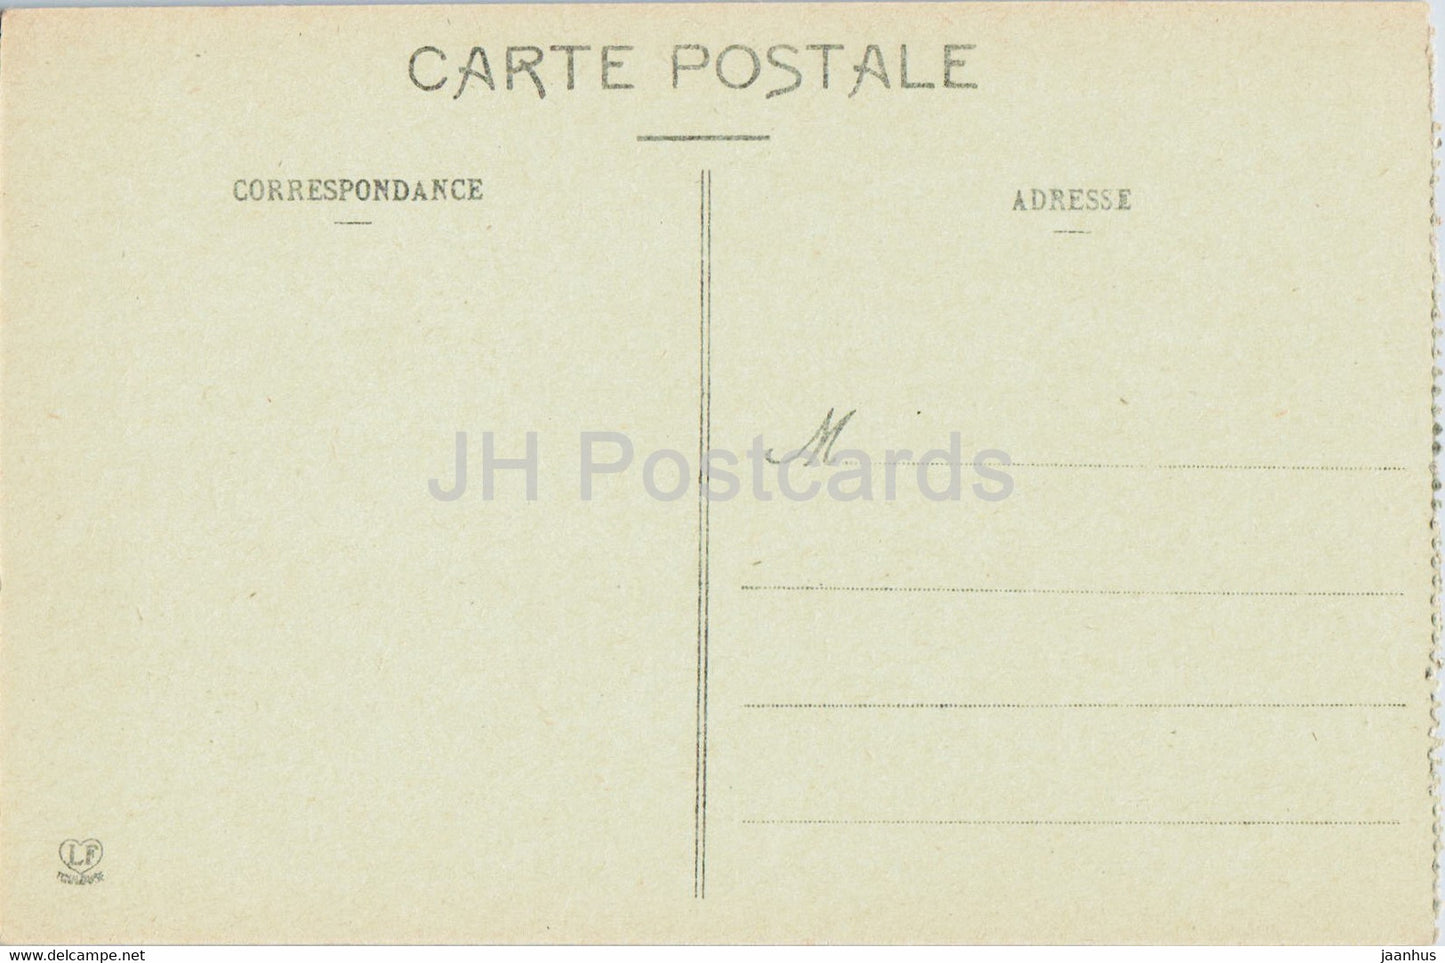 Le Capcir - Paturages dans la Foret de la Matte - 450 - animals - cow - old postcard - France - unused